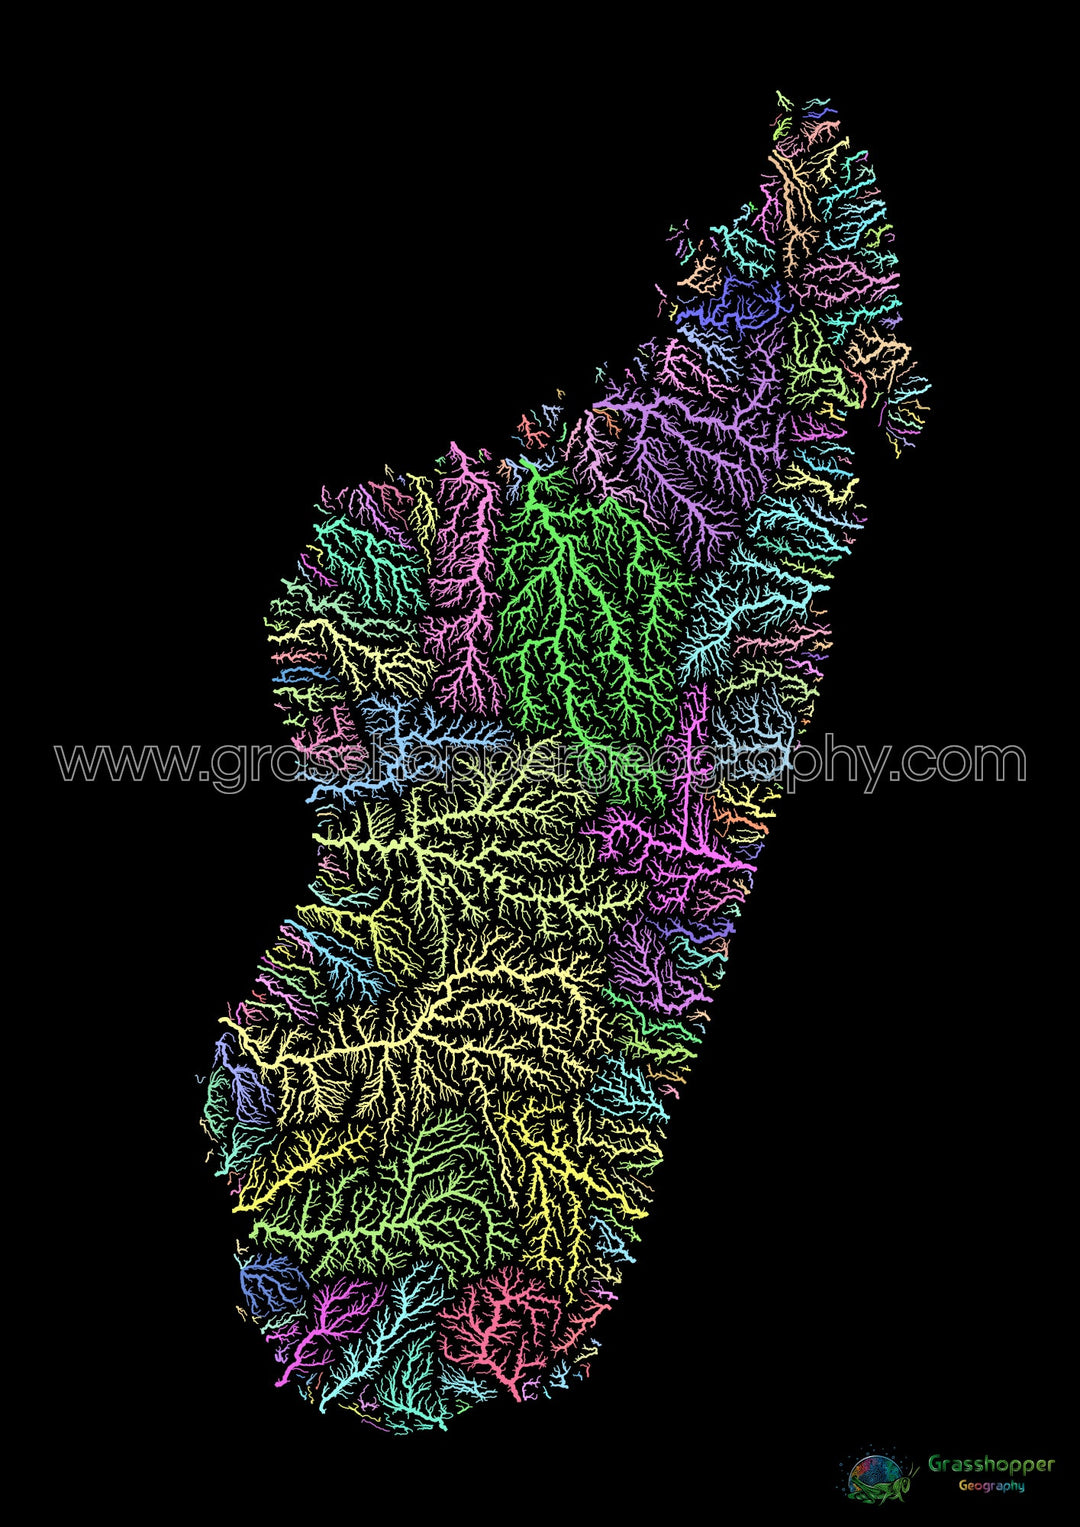 Madagascar - Mapa de la cuenca fluvial, pastel sobre negro - Impresión de Bellas Artes